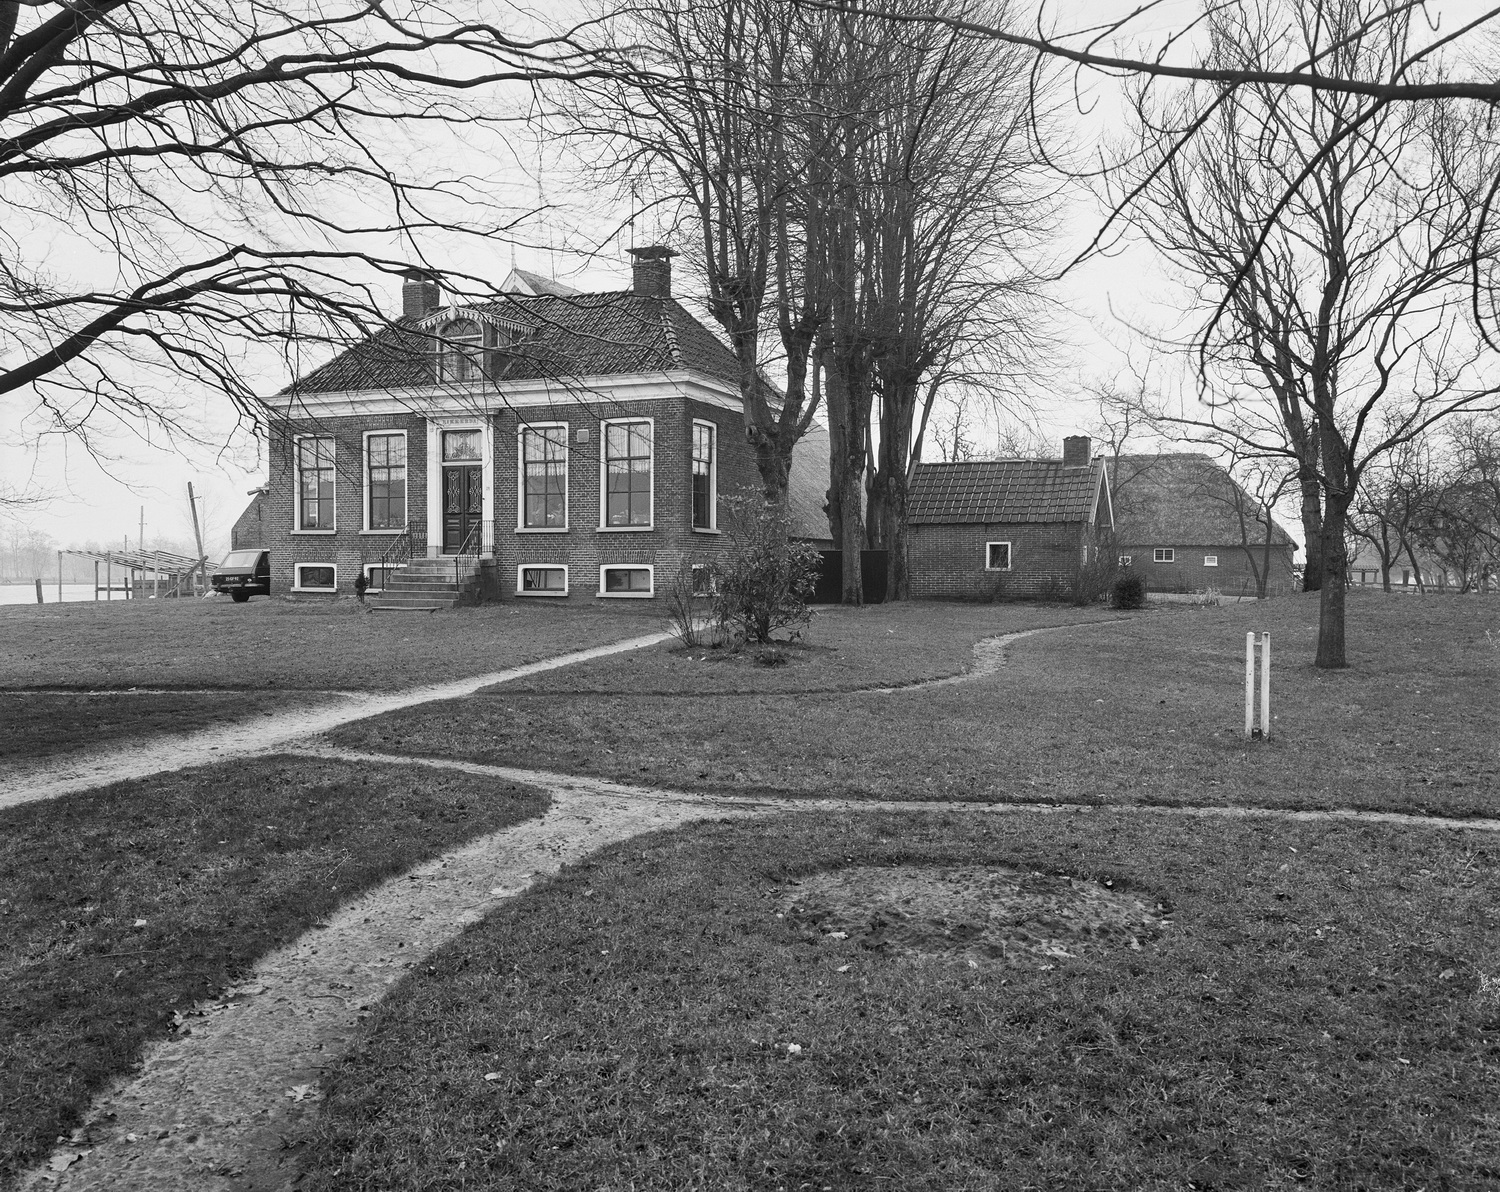 Voorhuis boerderij Rikkerda te Lutjegast met stookhut. Bron: Rijksdienst voor Cultureel Erfgoed. Foto: P. van Galen., maart 1977. Mon.nr. 518775, Doc. nr. 14866. Licentiie: Creative Commons.